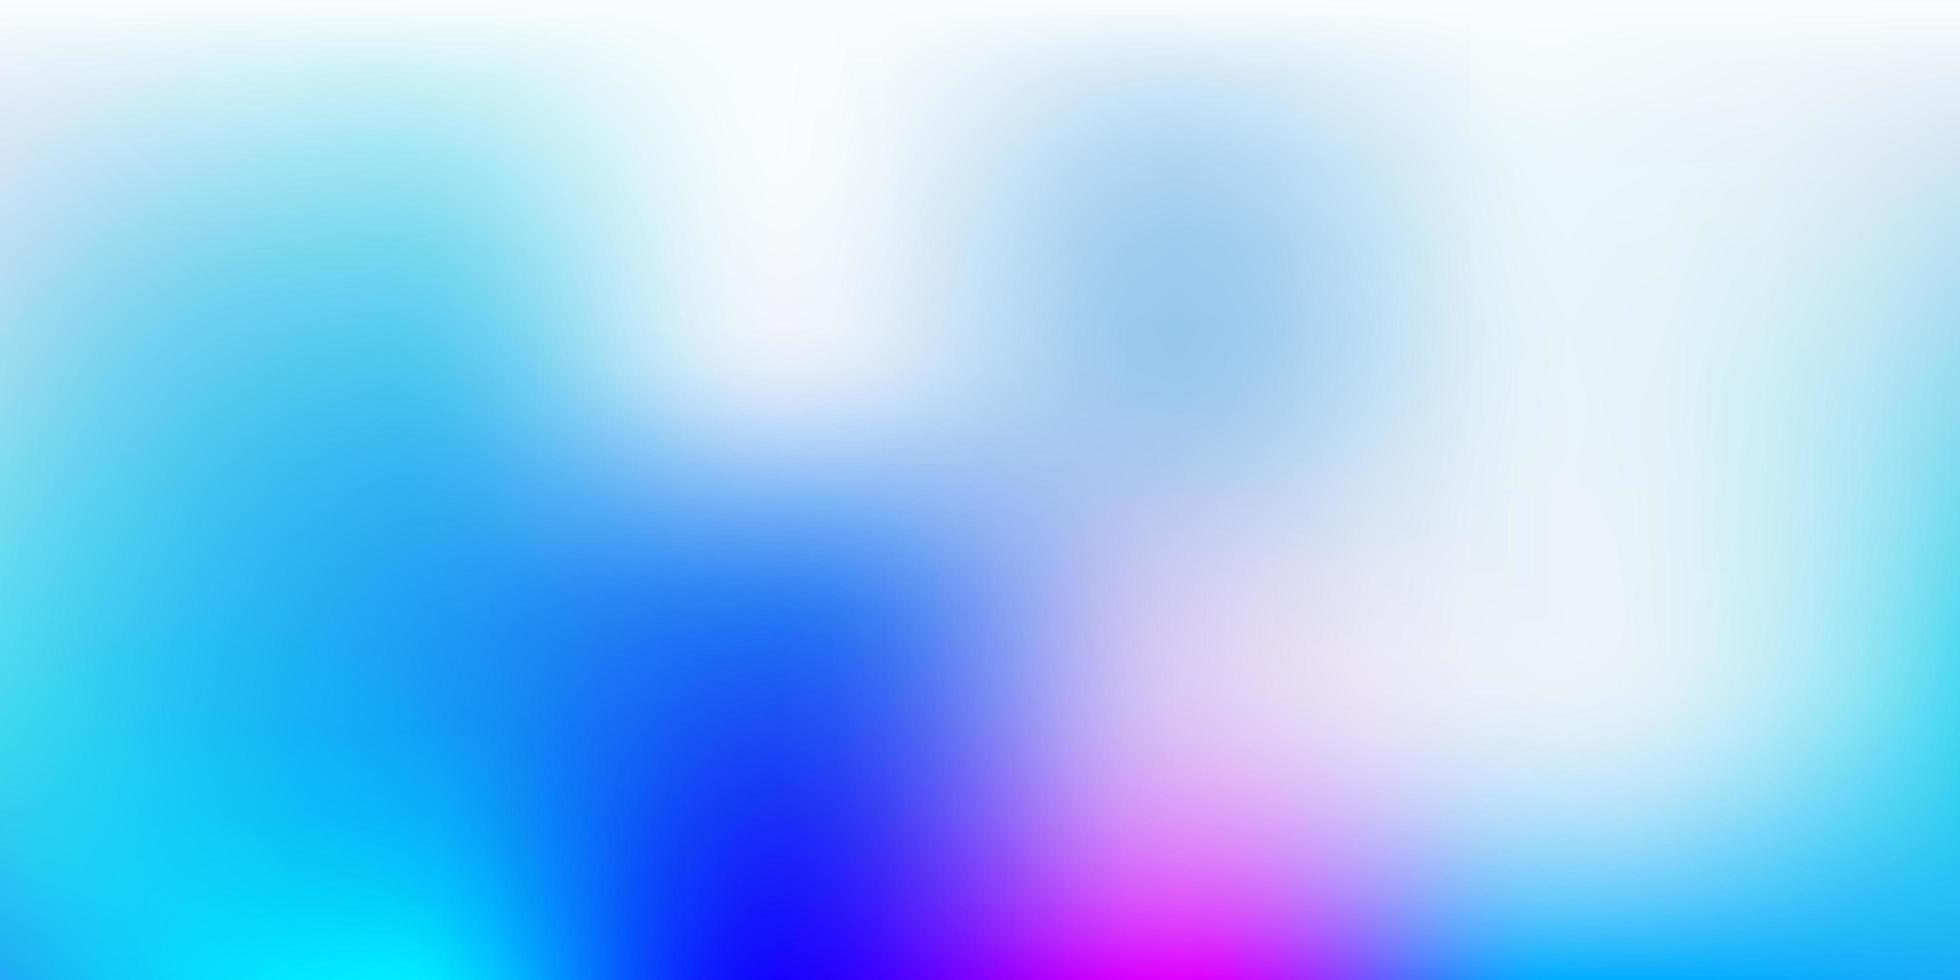 ljusrosa, blå vektor oskärpa layout.